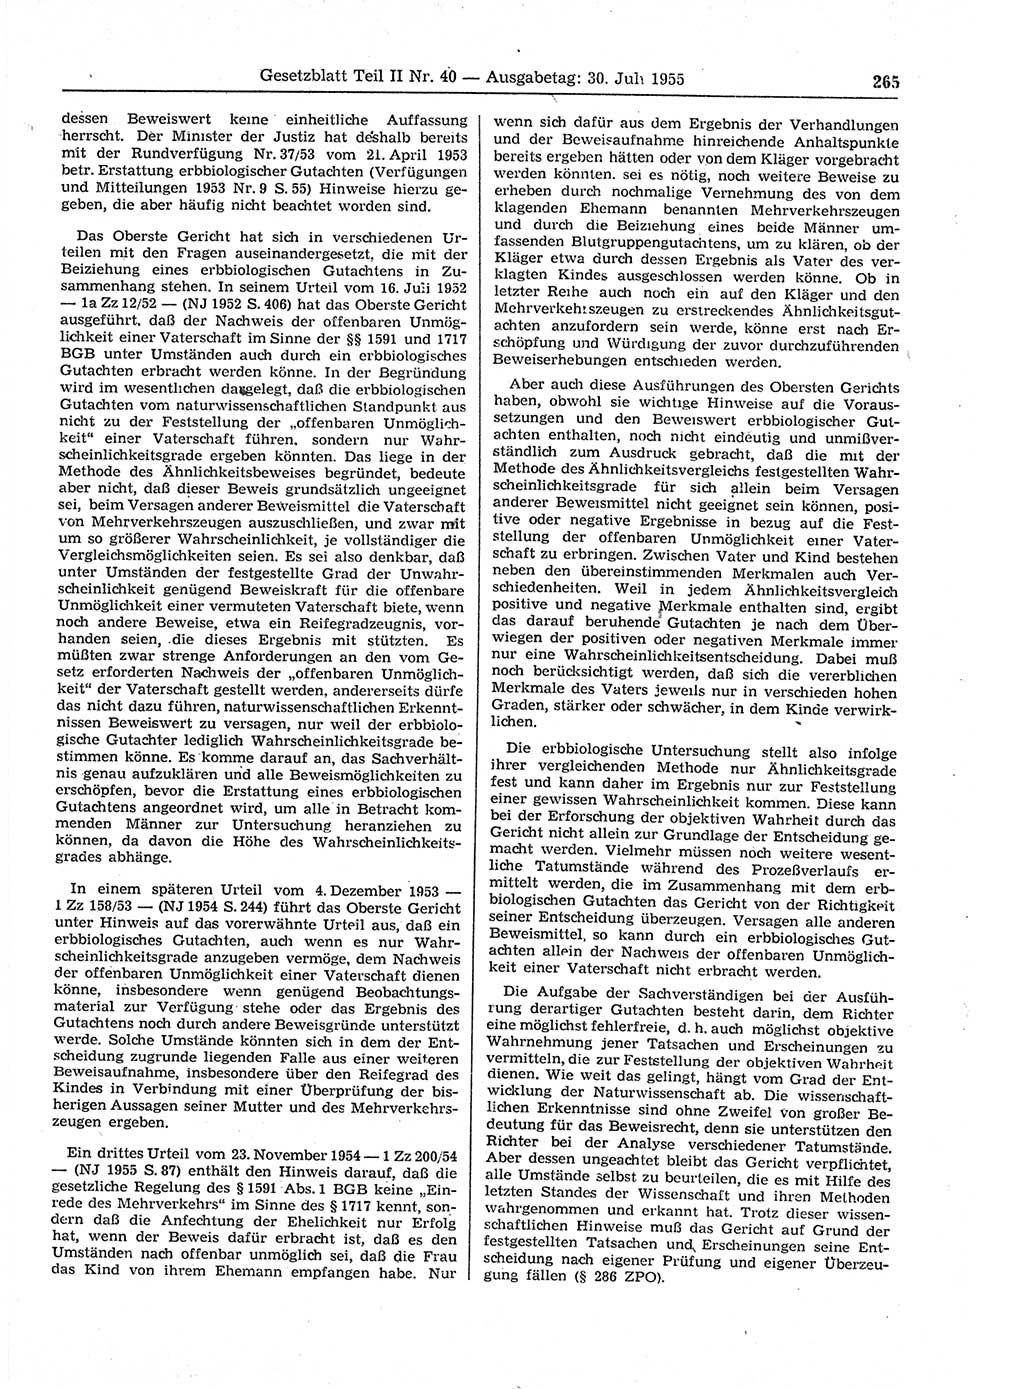 Gesetzblatt (GBl.) der Deutschen Demokratischen Republik (DDR) Teil ⅠⅠ 1955, Seite 265 (GBl. DDR ⅠⅠ 1955, S. 265)